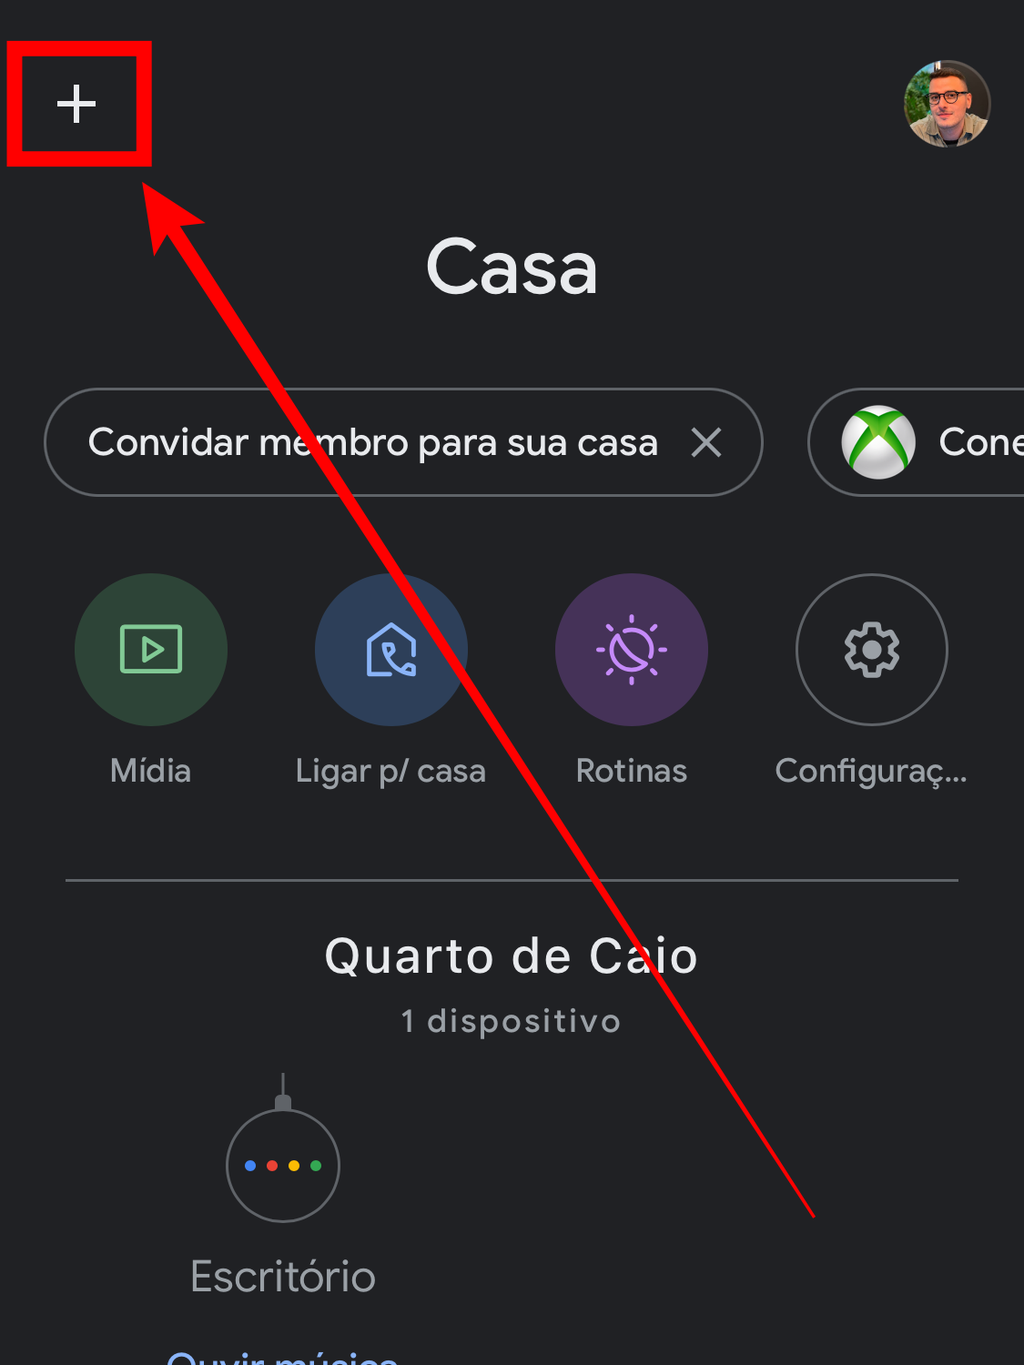 Toque no símbolo de "+" para adicionar um novo dispositivo (Captura de tela: Caio Carvalho/Canaltech)